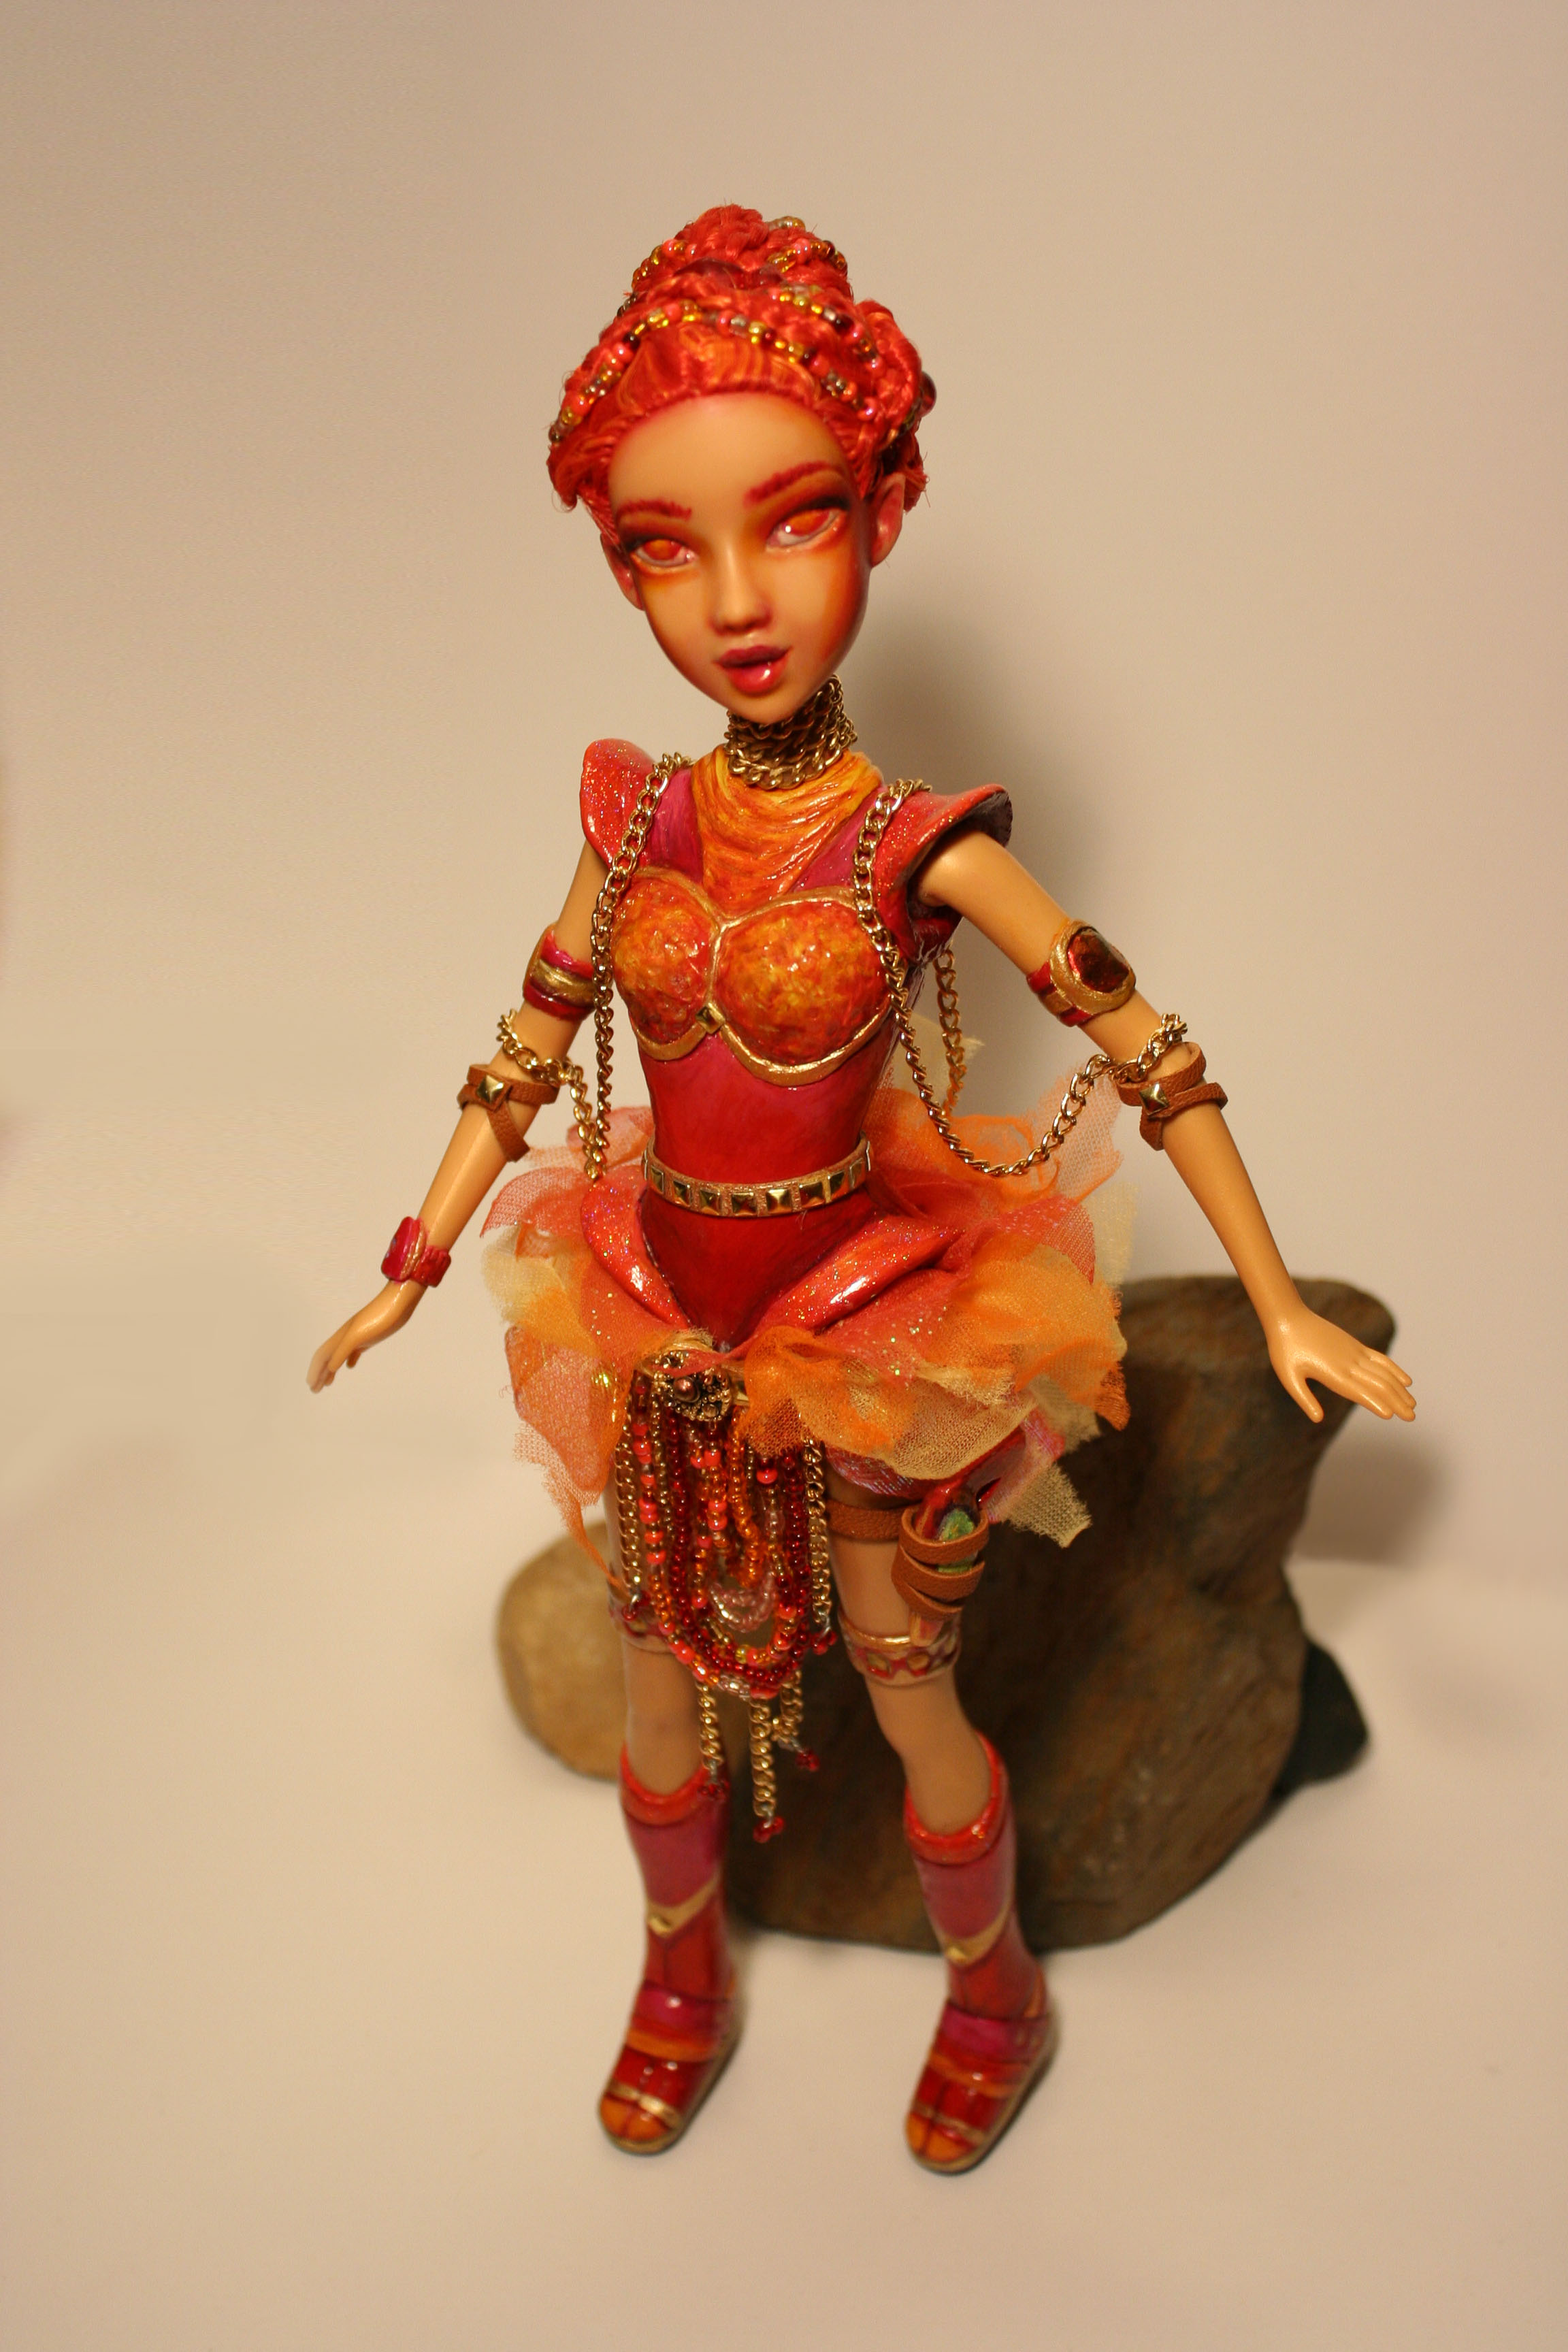 110-ooak-doll-repaint-fire-alien-woman.jpg